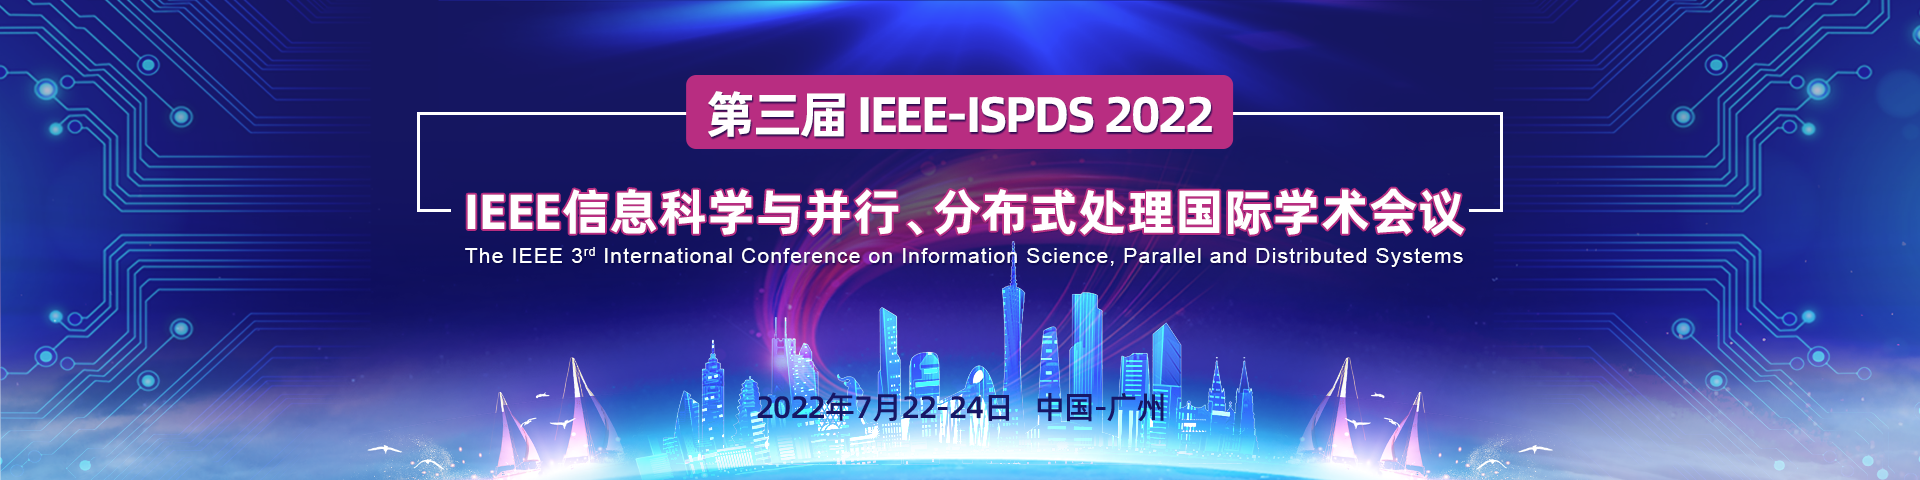 7月广州ISPDS 2022-banner-陈军-20211111.png